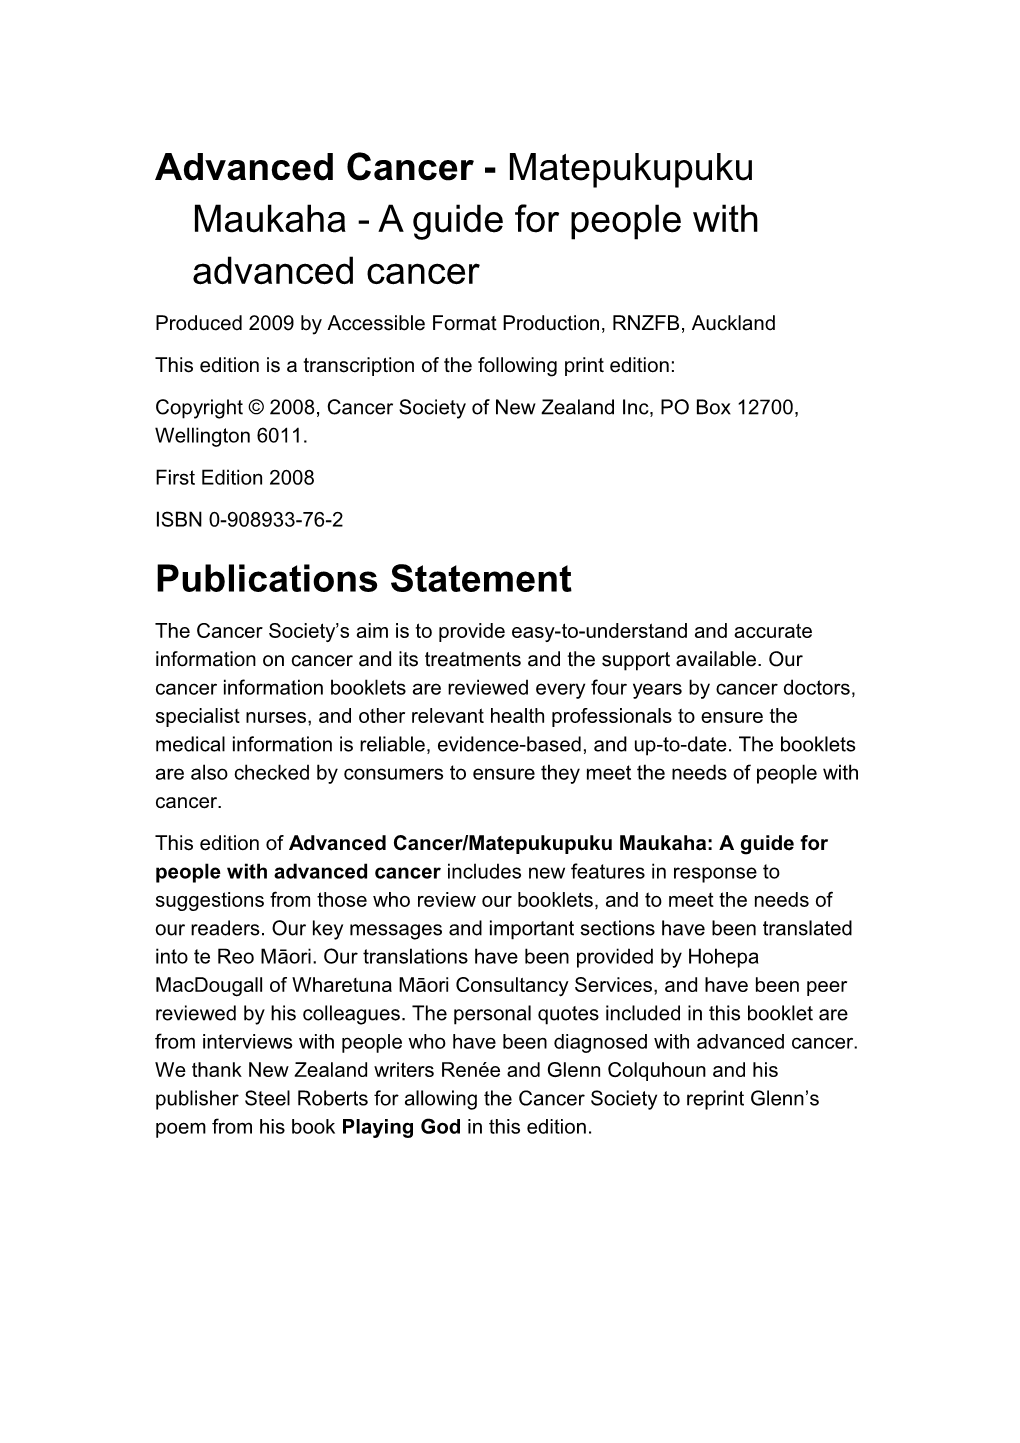 Advanced Cancer - Matepukupuku Maukaha- a Guide for People with Advanced Cancer